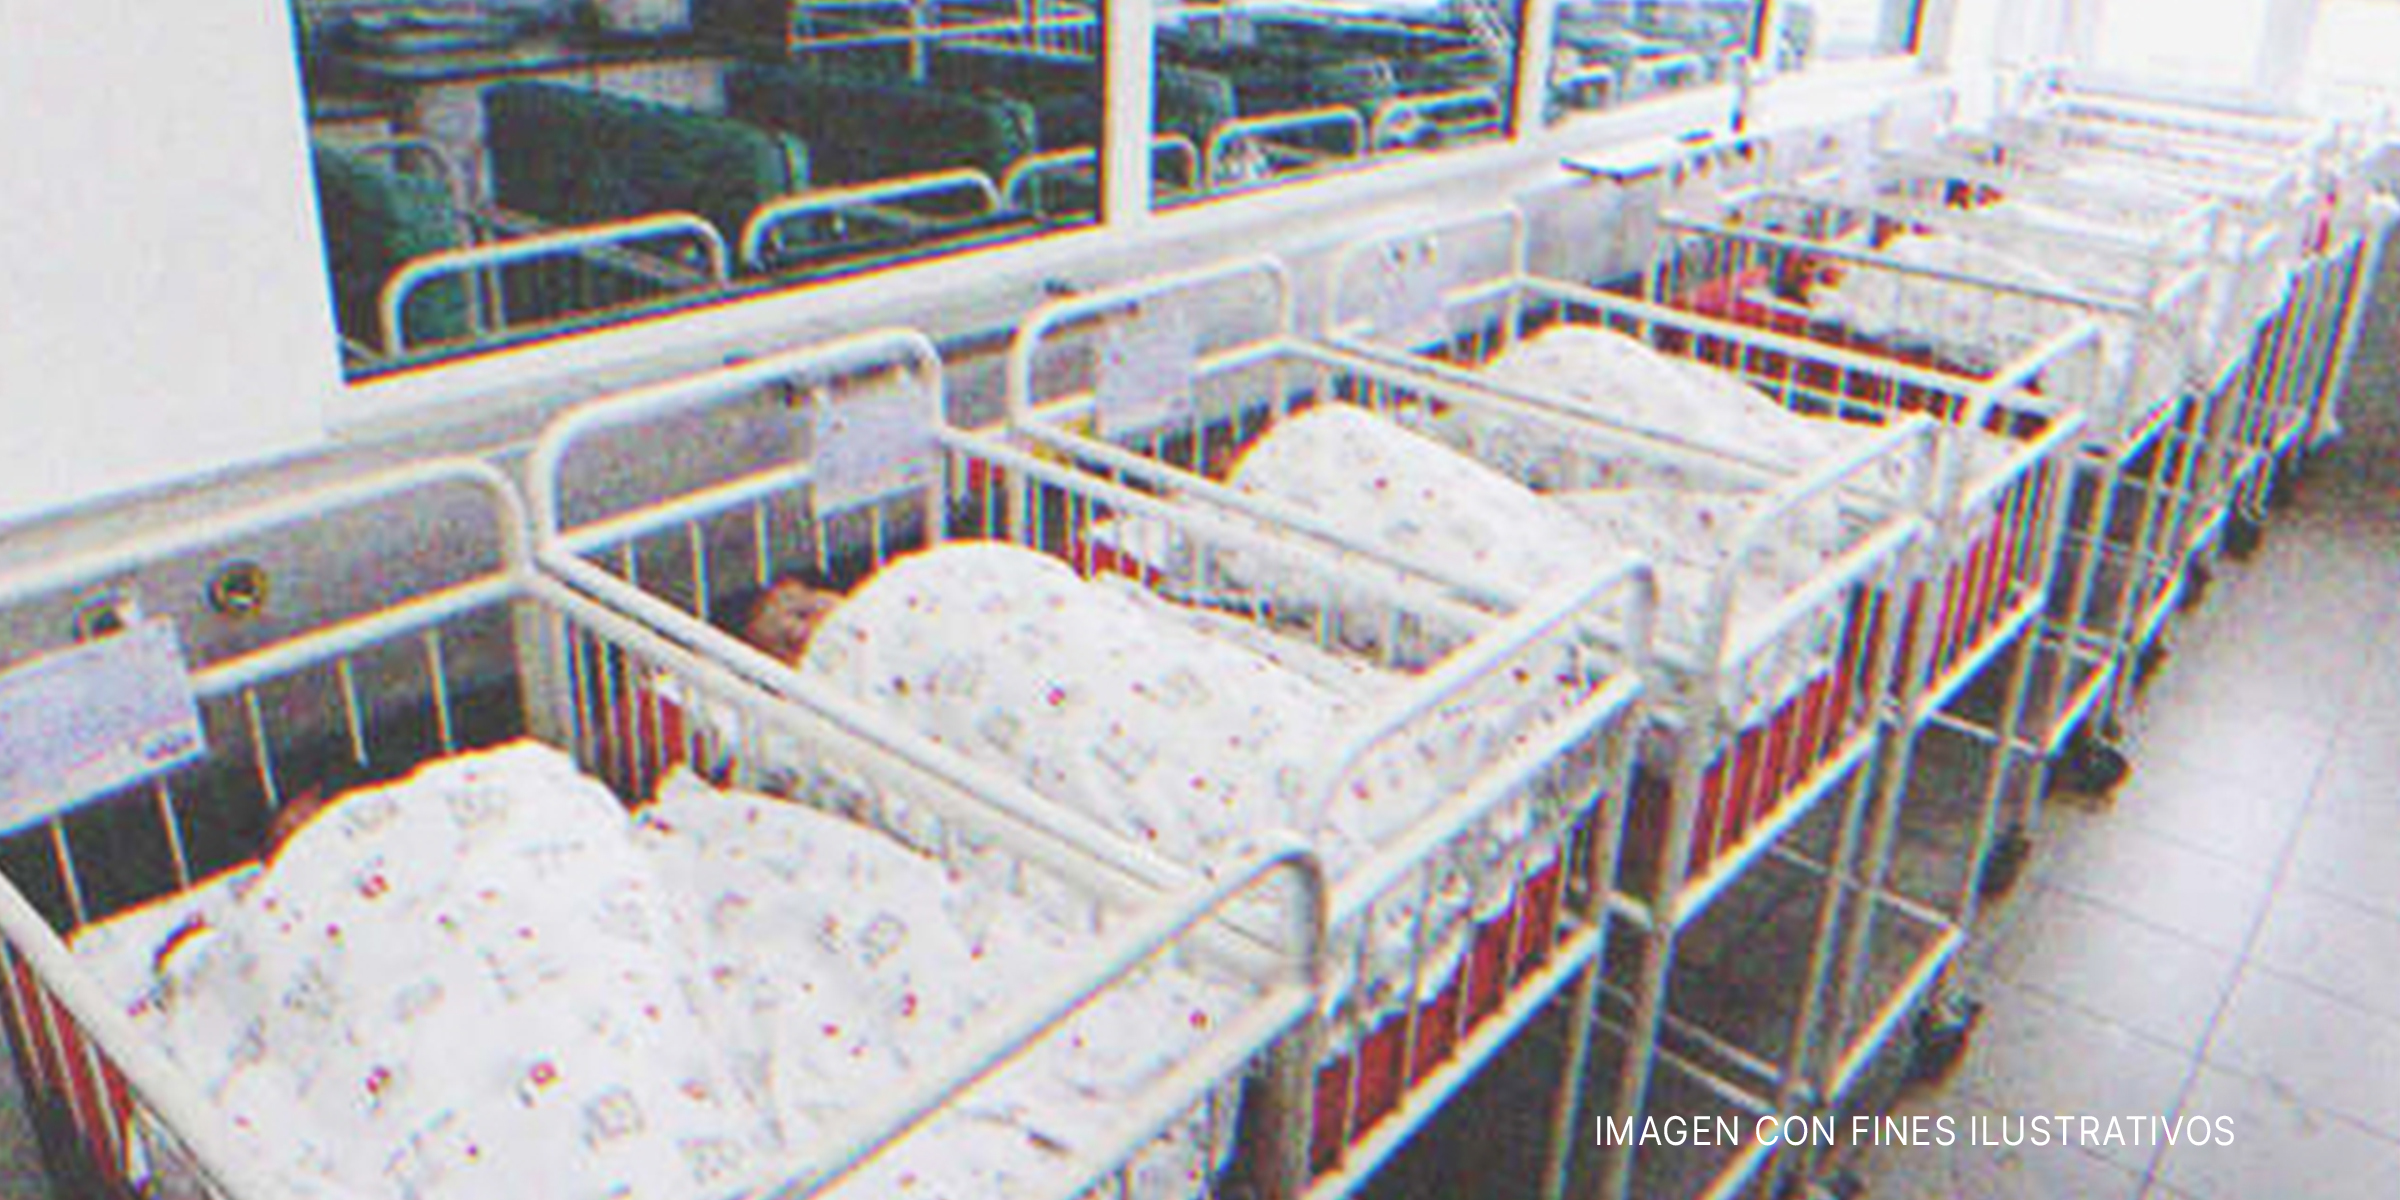 Cunas en un hospital | Foto: Shutterstock